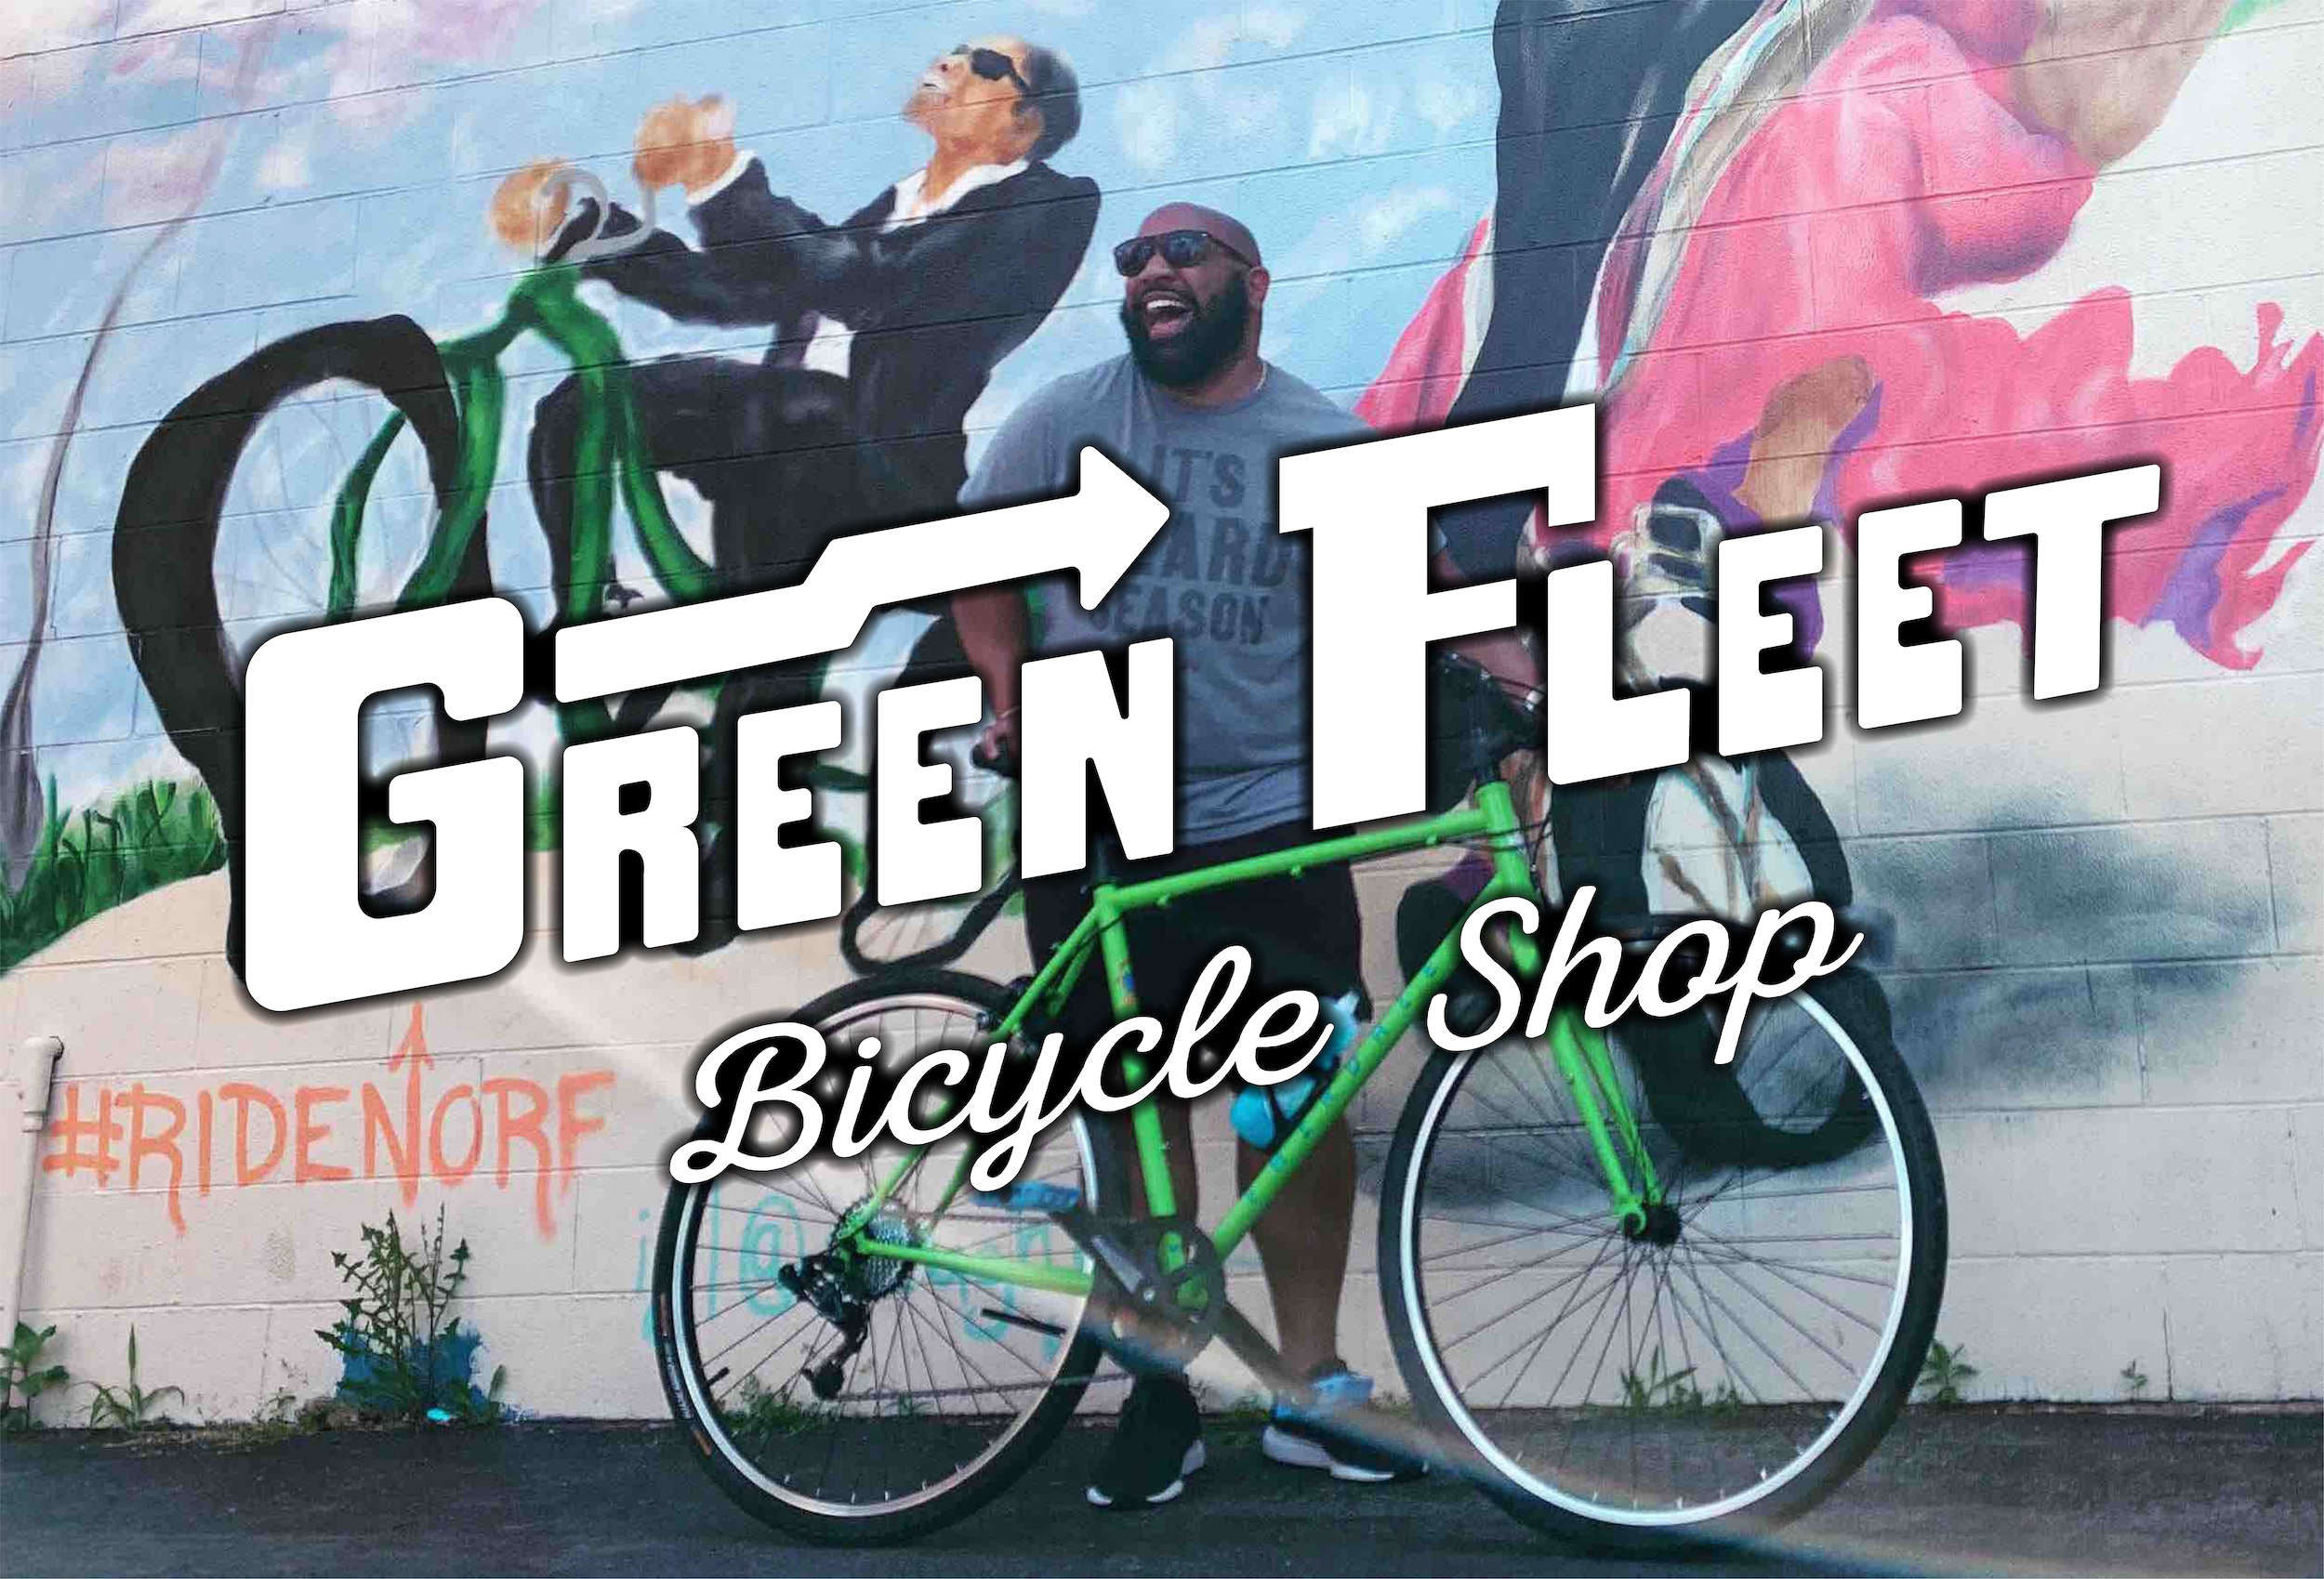 fleet bike shop